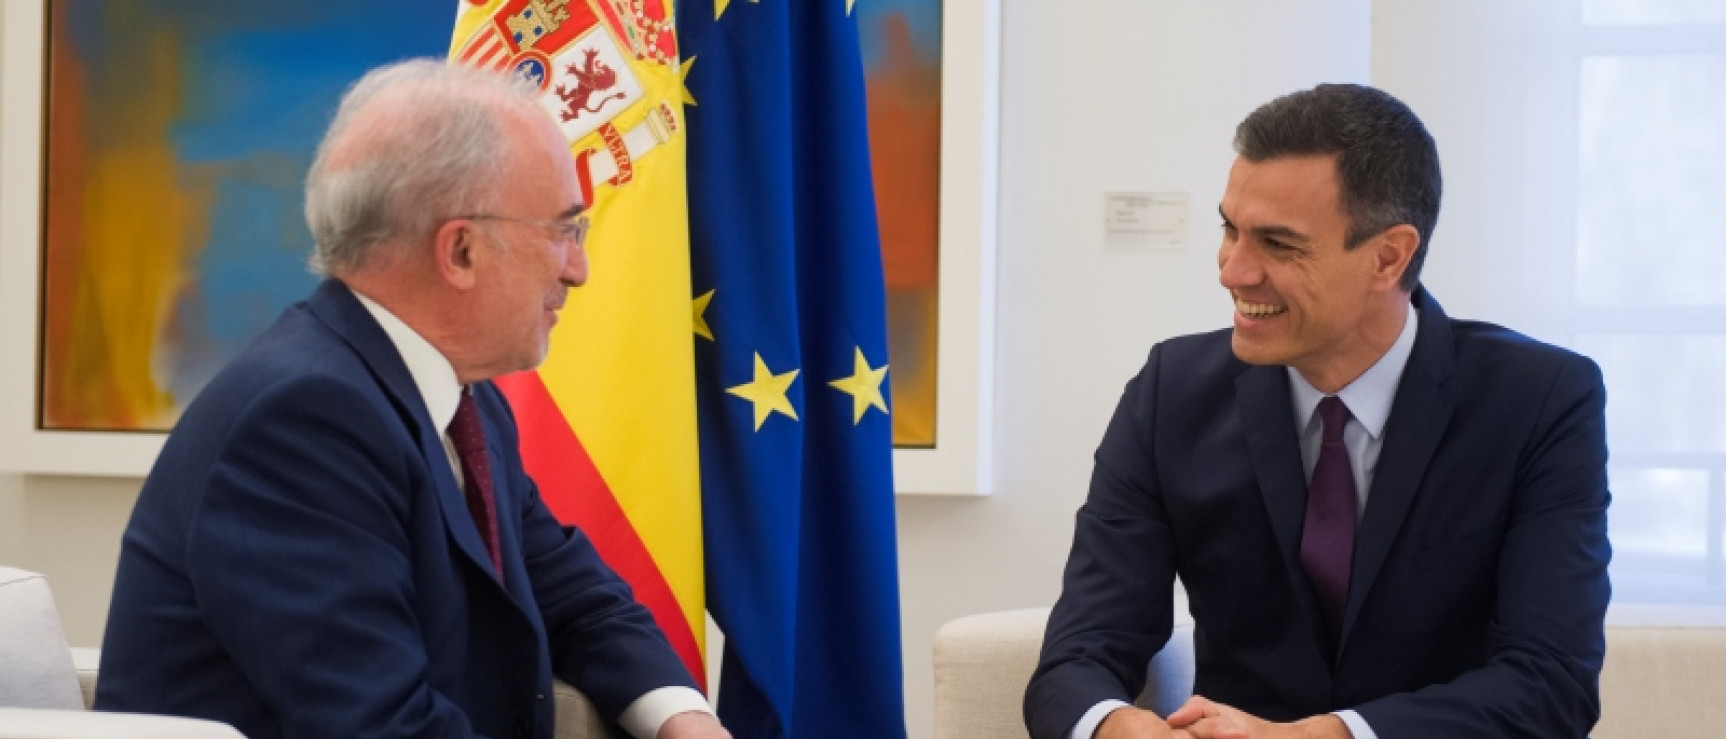 famoso Ellos federación El director de la RAE se reúne con el presidente del Gobierno | Noticia | Real  Academia Española